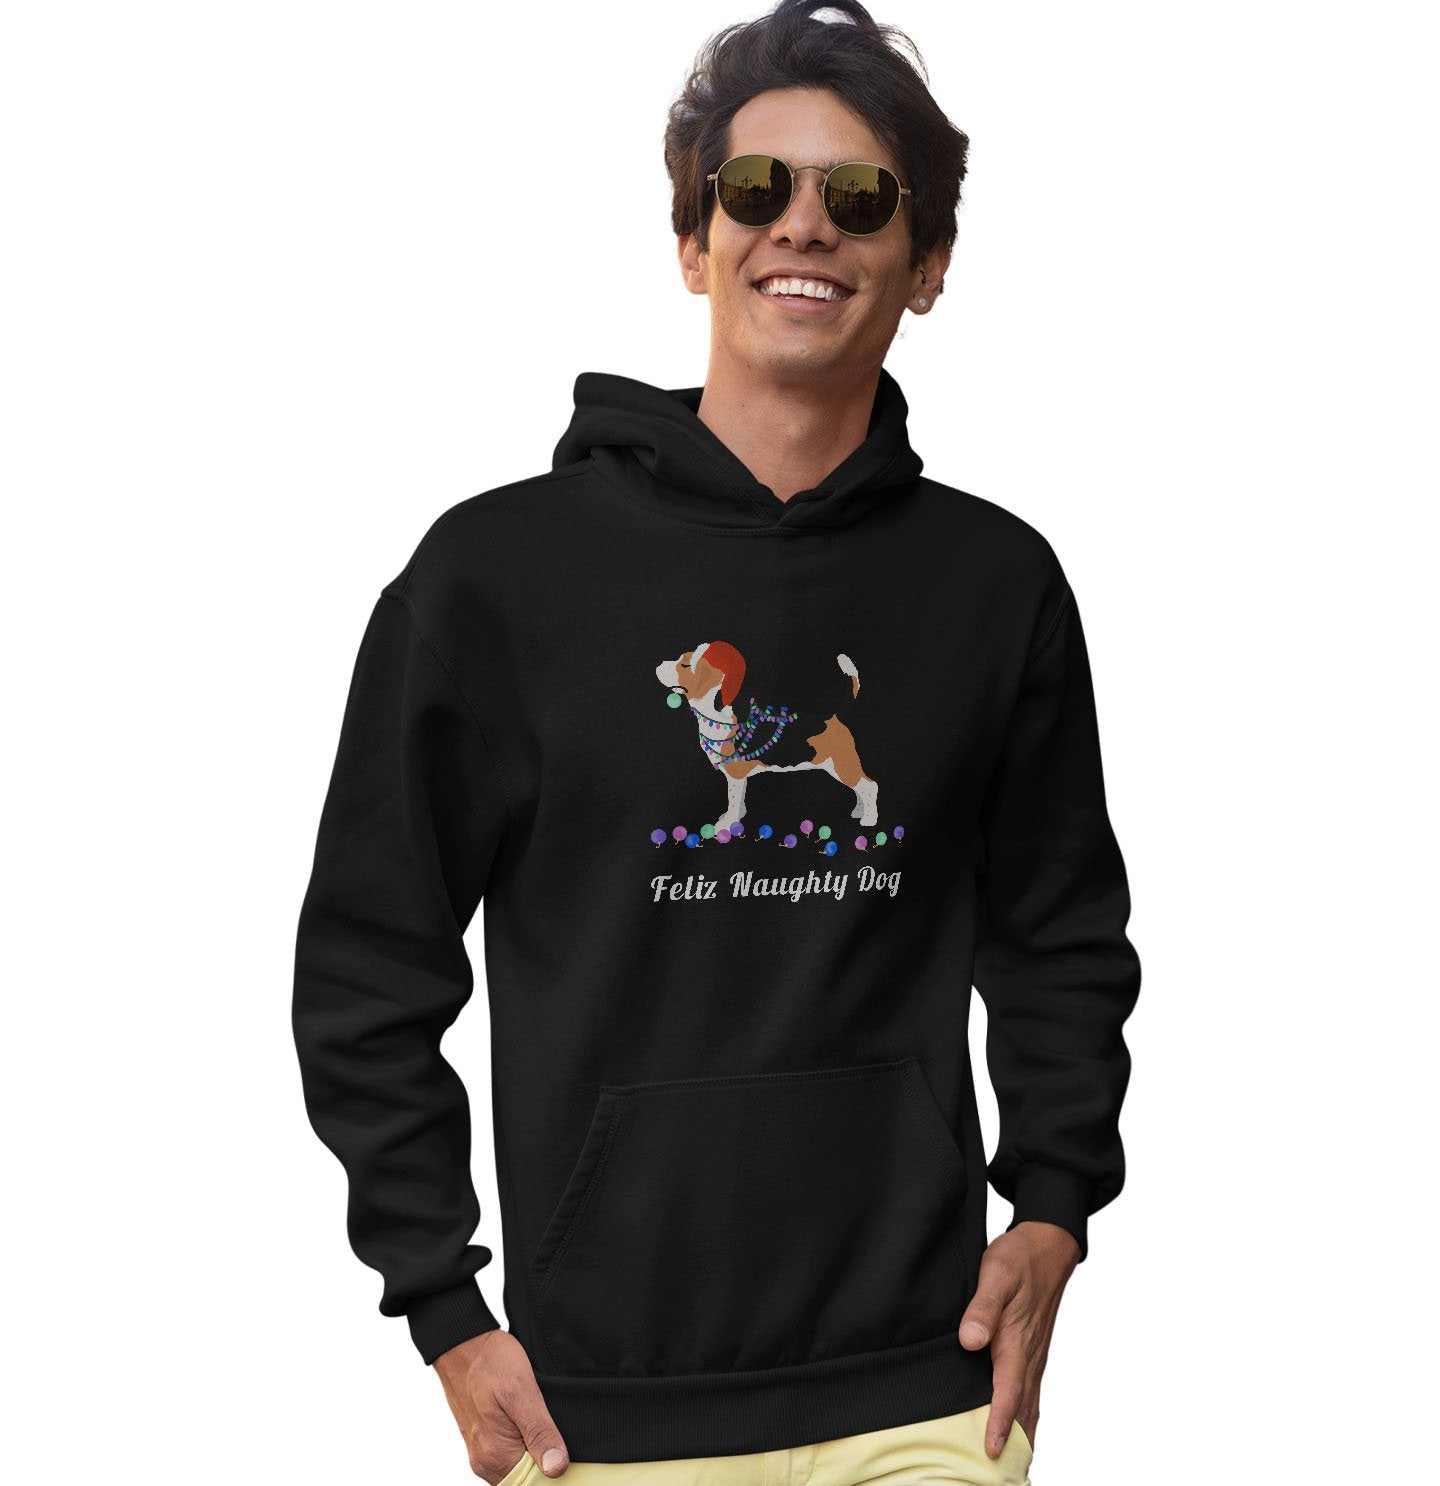 Feliz Naughty Dog Beagle - Adult Unisex Hoodie Sweatshirt